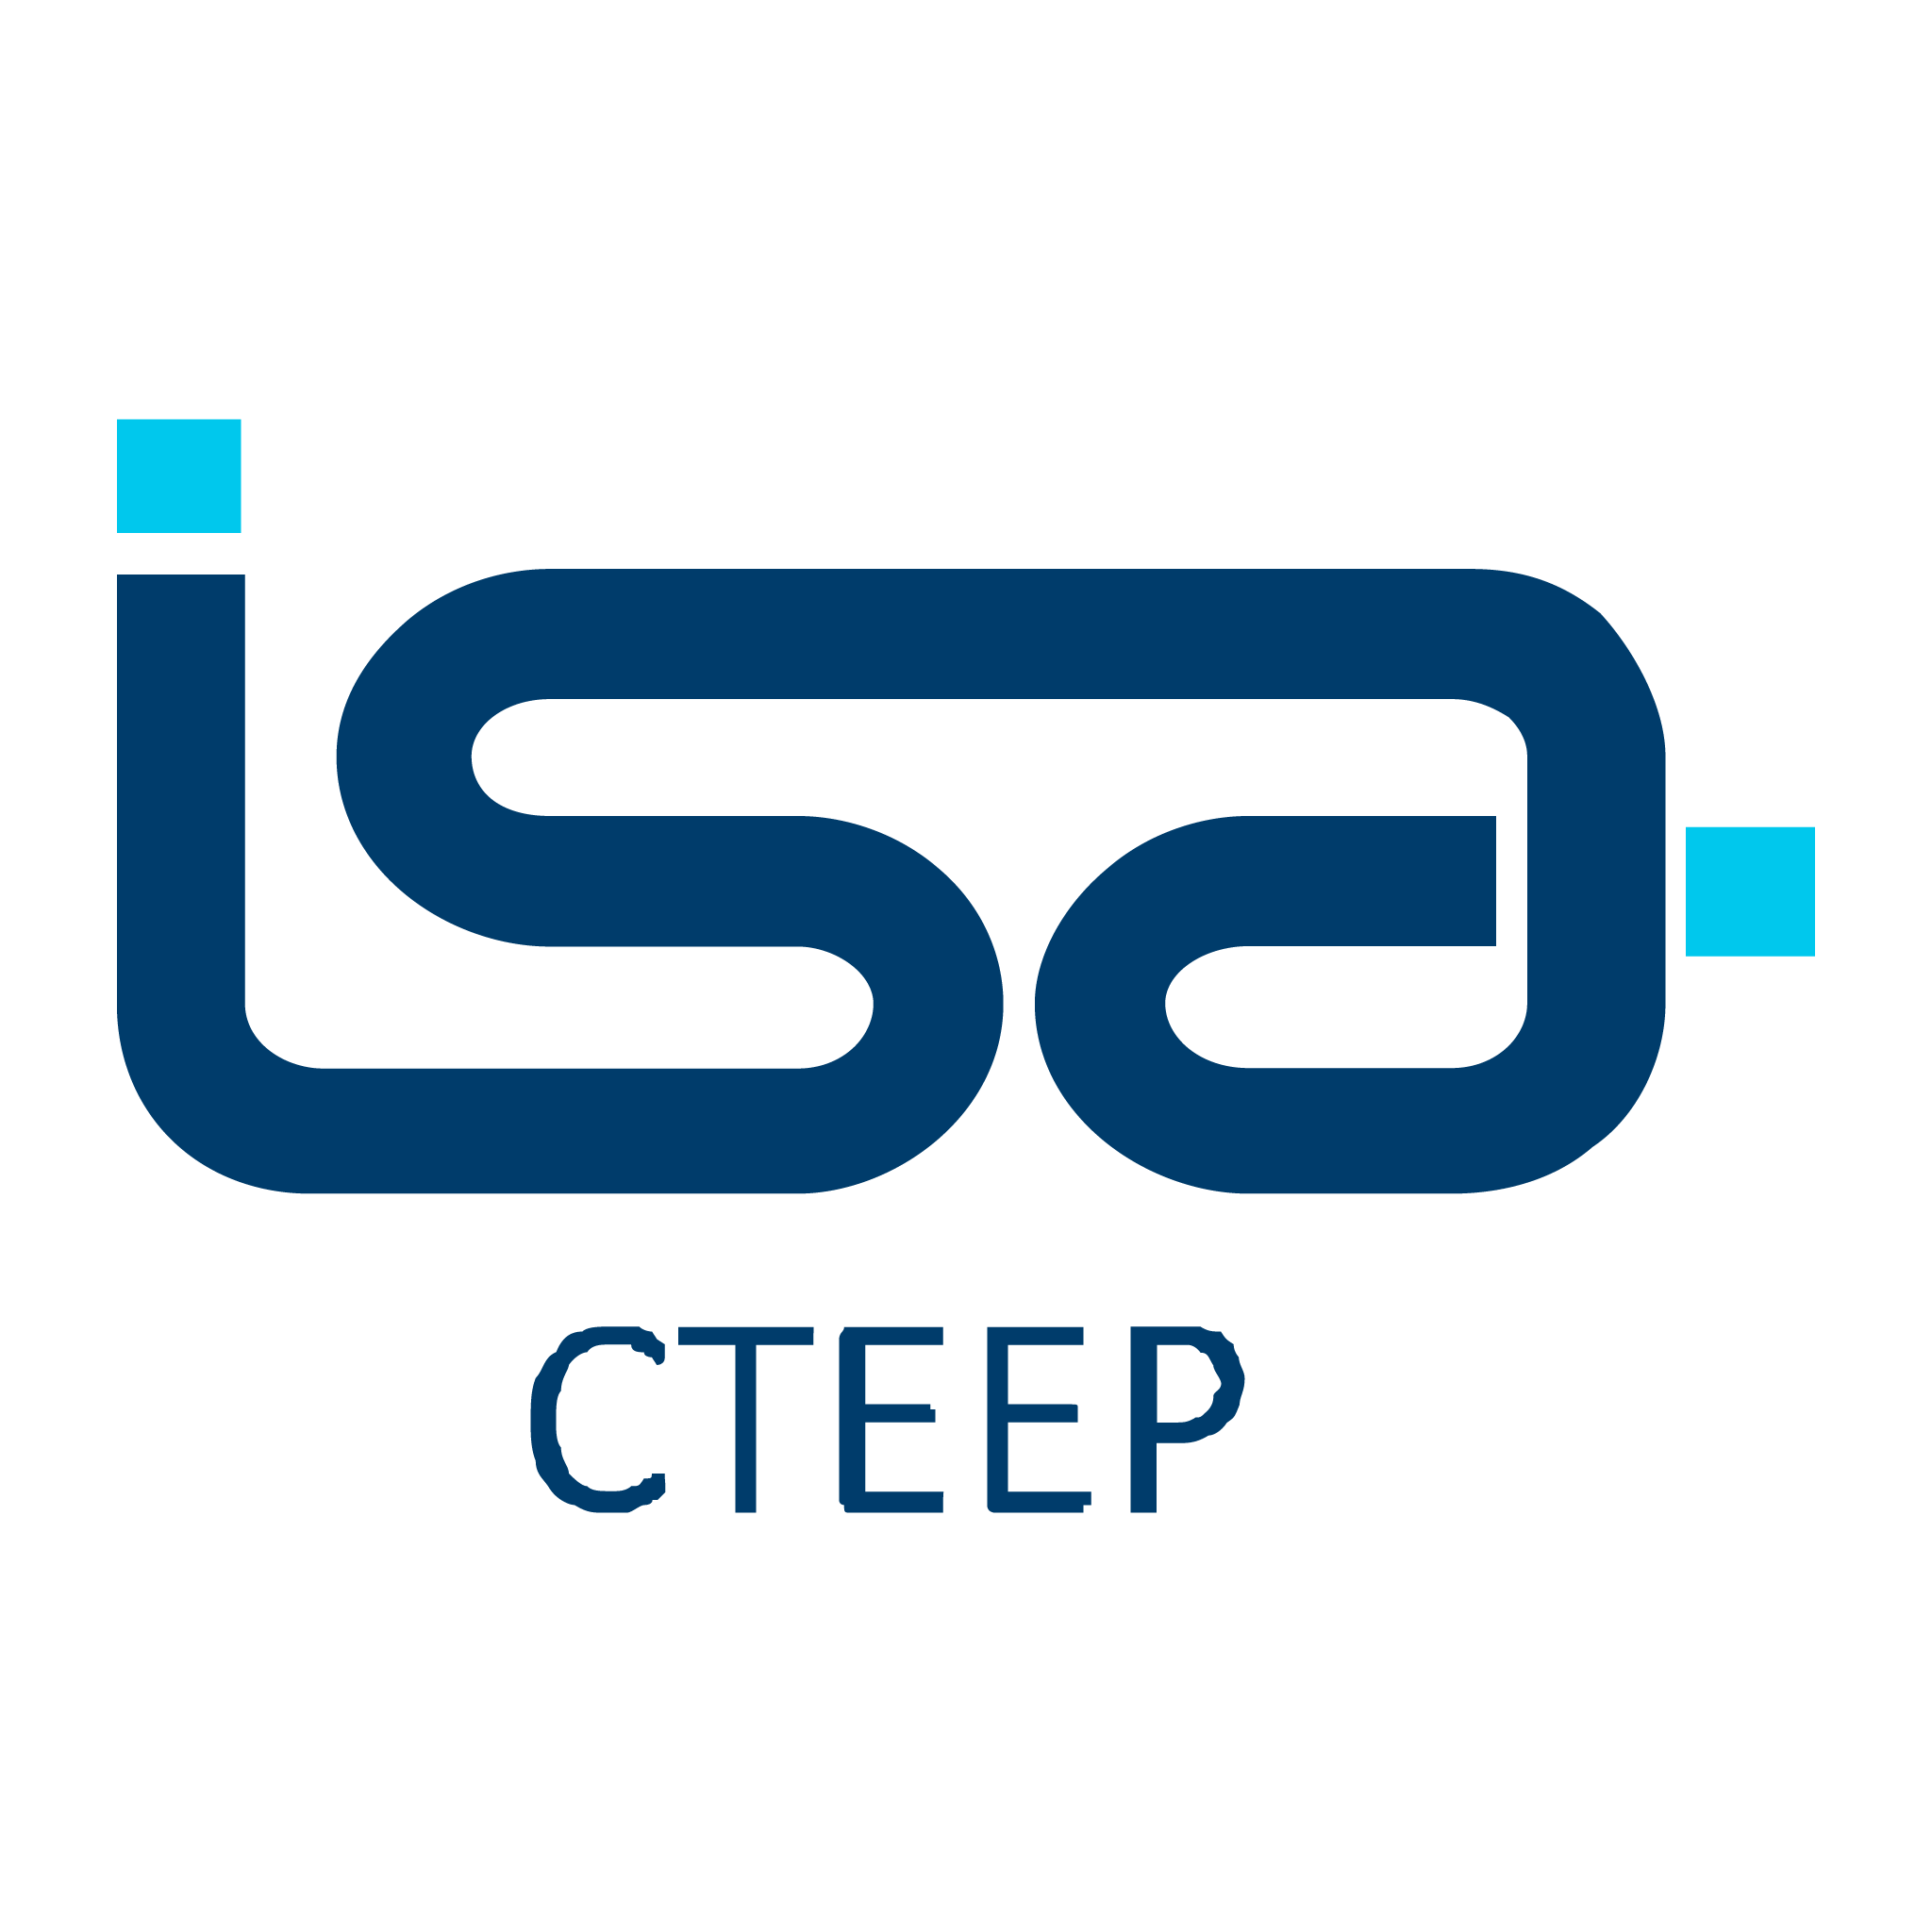 isa cteep logo